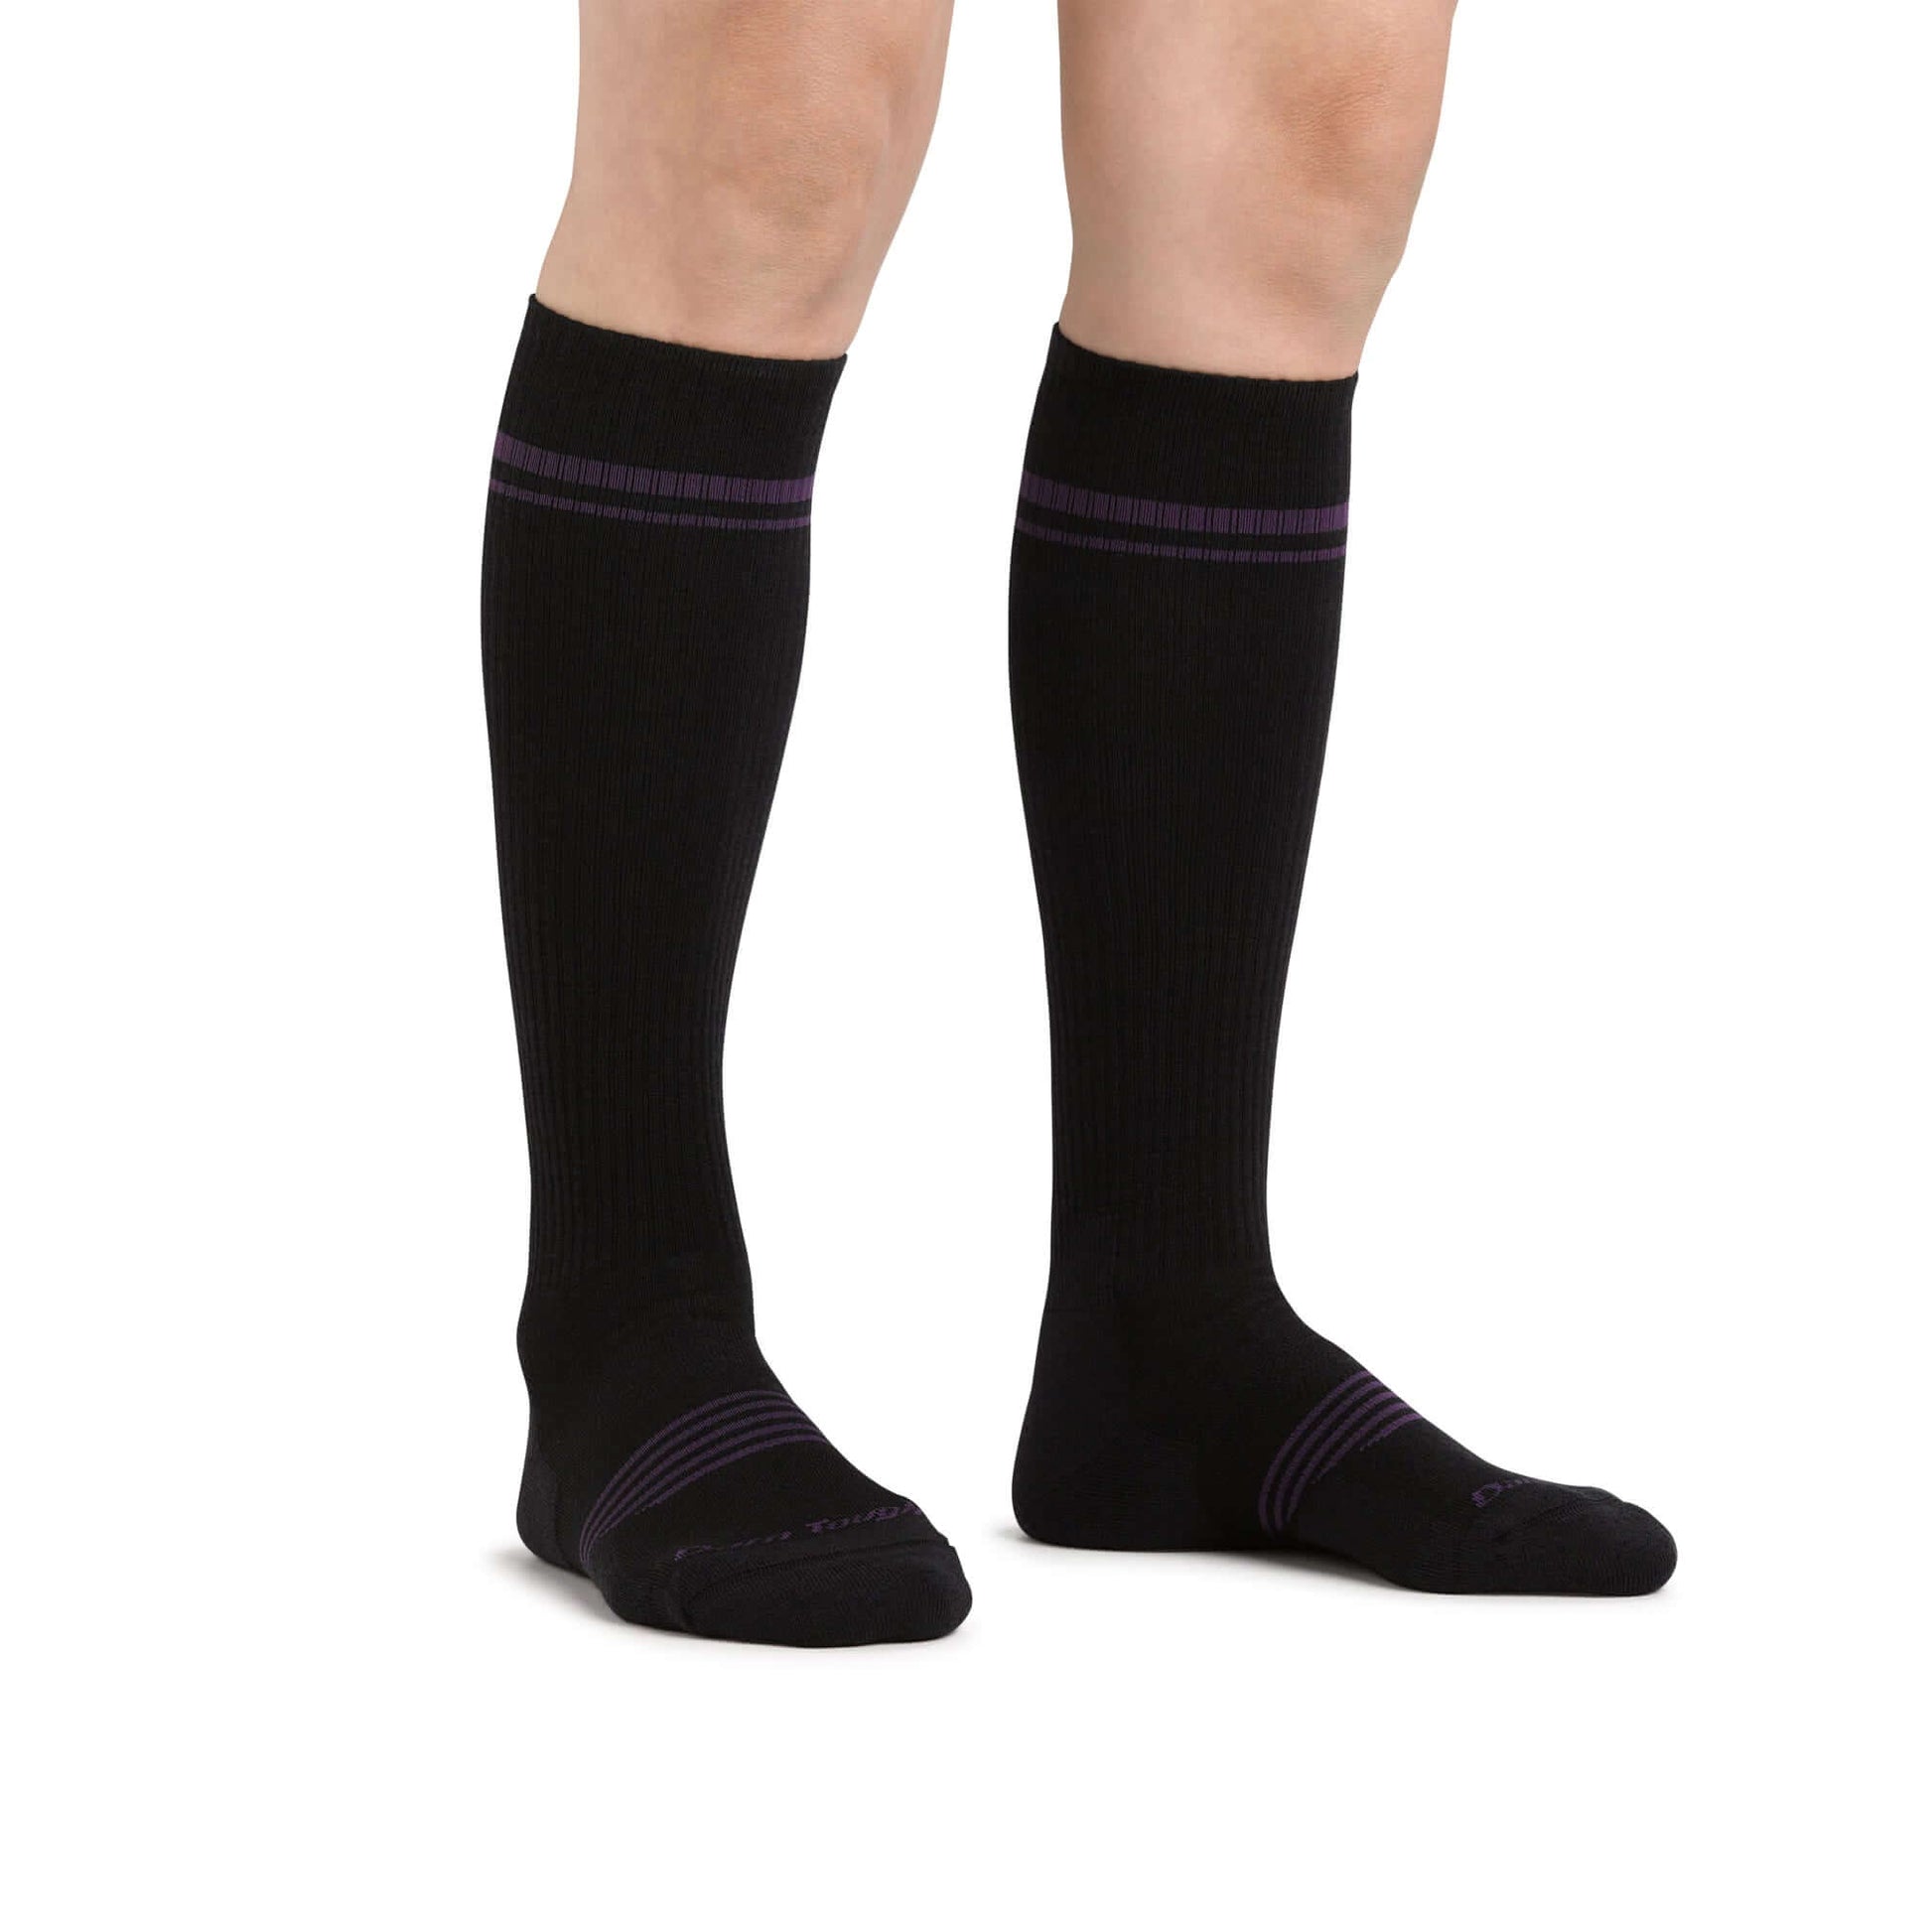 Darn Tough Calcetín por debajo de la rodilla con acolchado para cualquier actividad física. Mod. Element 1109 color Color: Black